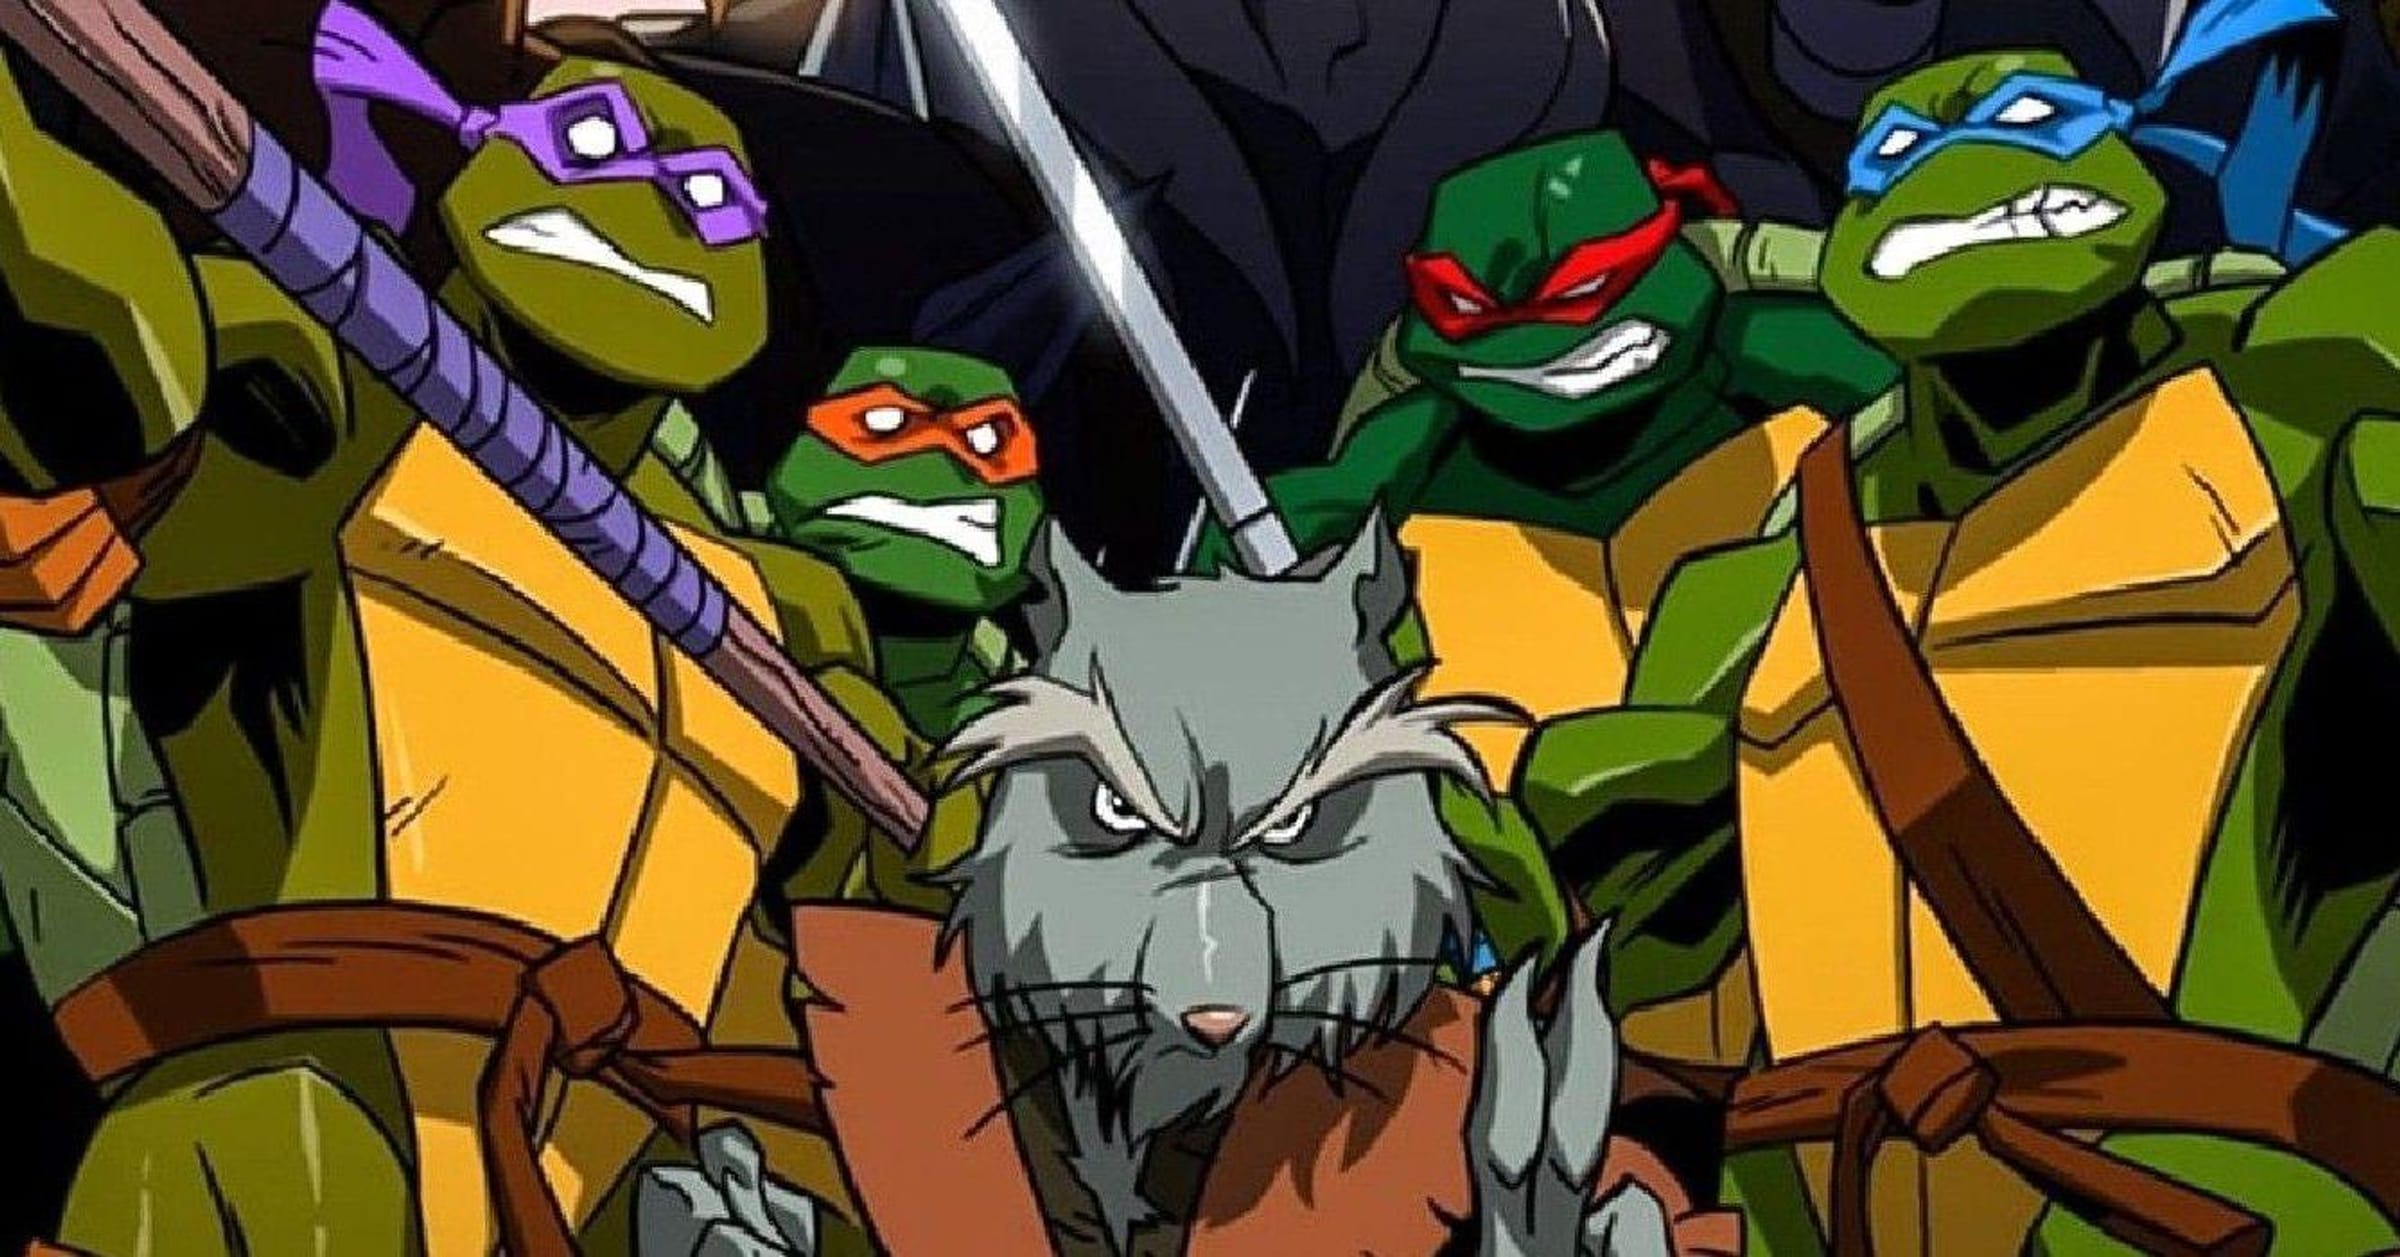 Rat King (Teenage Mutant Ninja Turtles) - Wikipedia